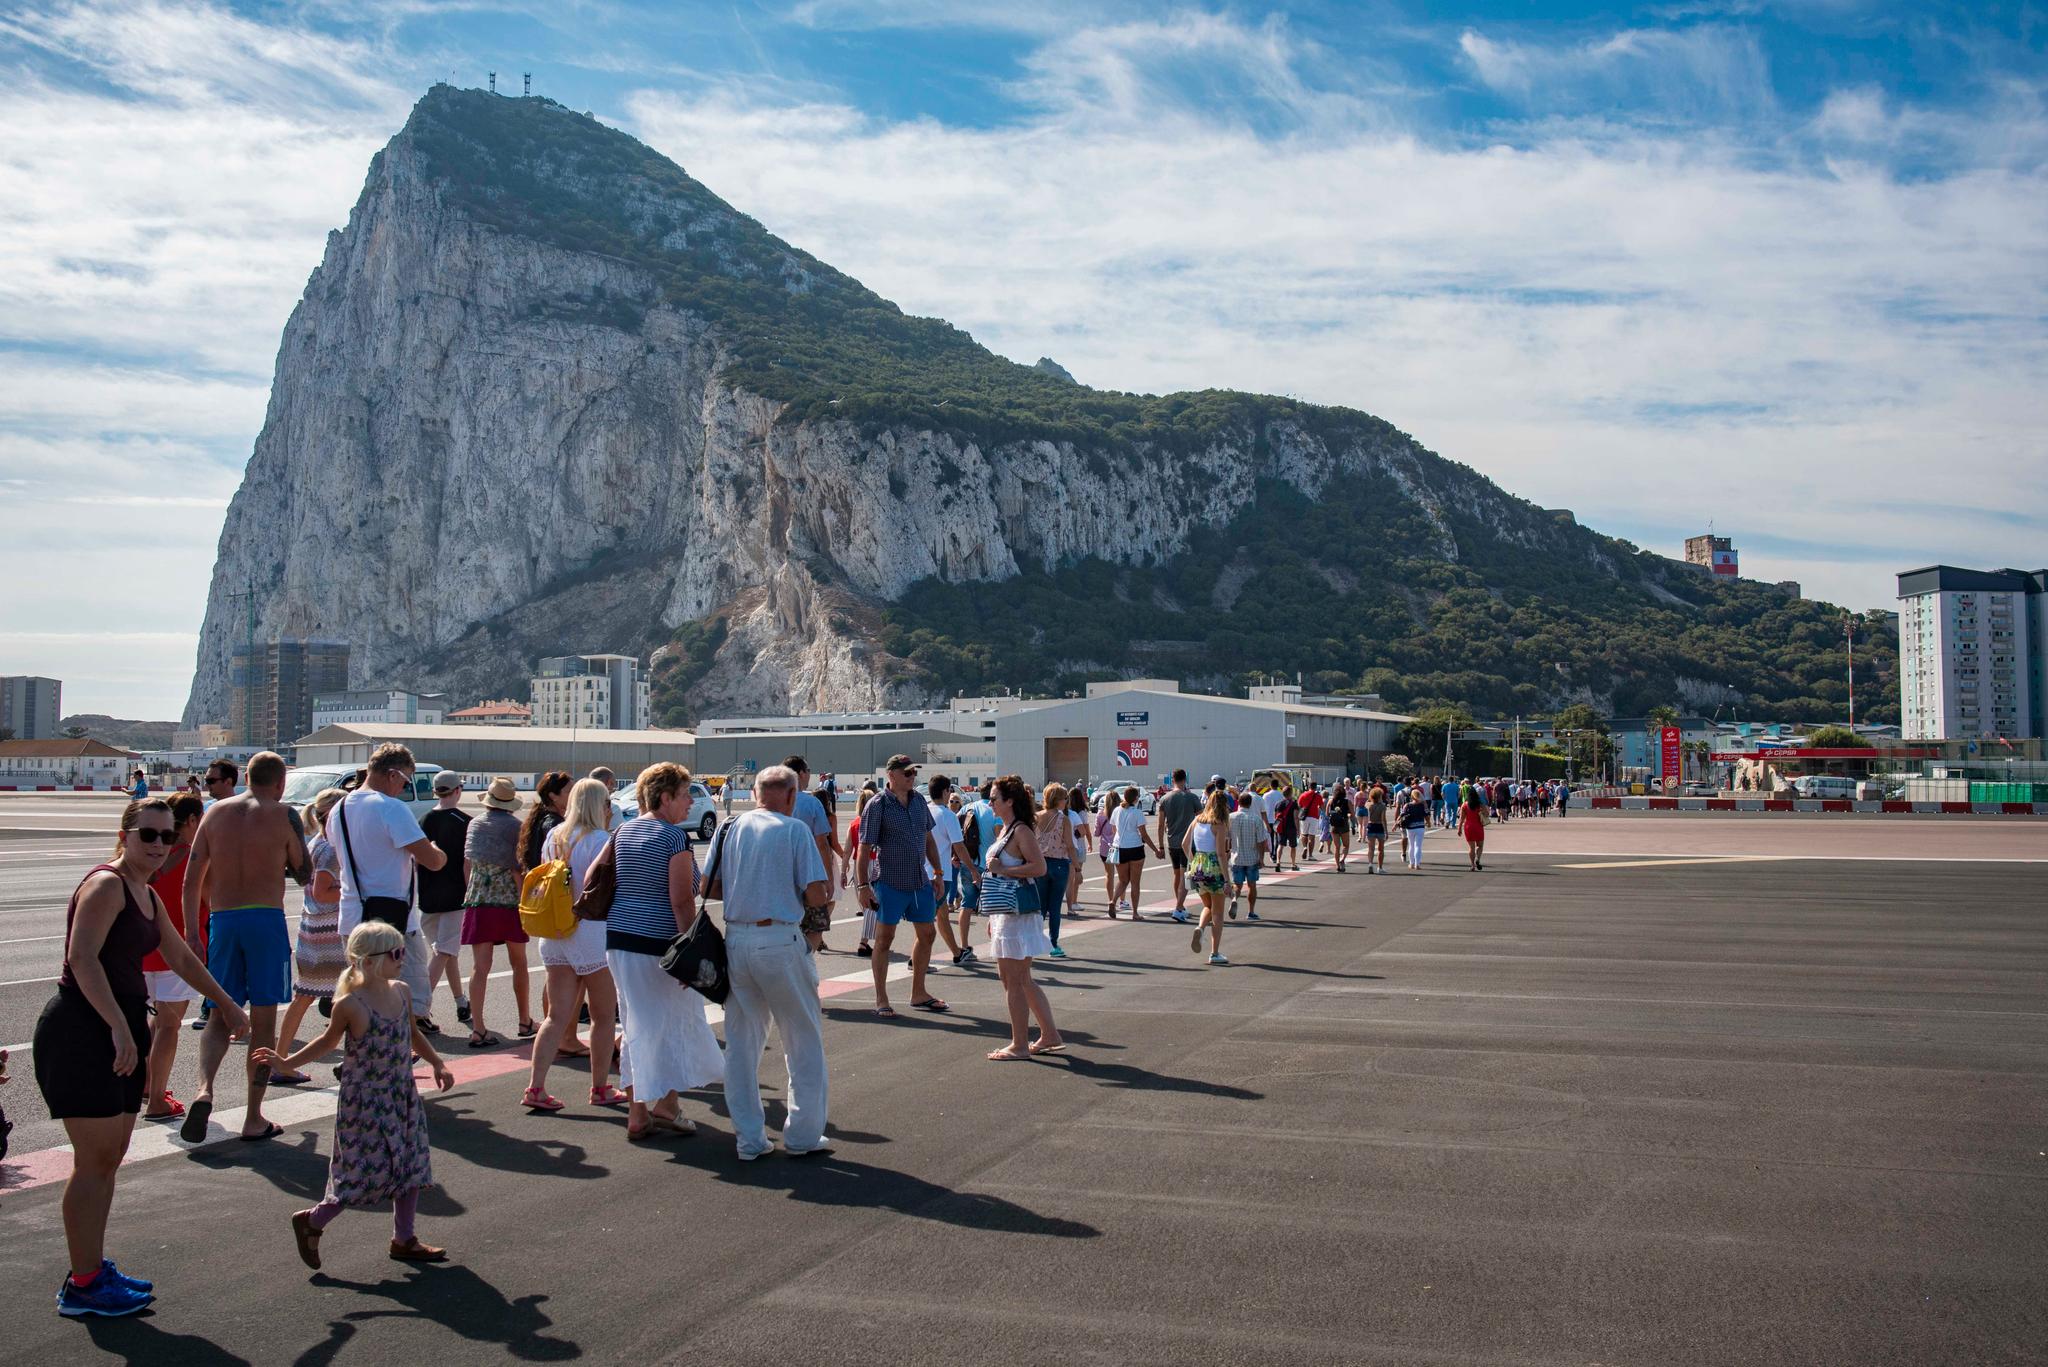 Hver dag kommer nesten 10.000 mennesker til Gibraltar for å jobbe. I tillegg kommer en rekke turister. Men Klippen er utenfor Schengen, og grensekontrollen er omfattende. Noen ganger er spanske tollmyndigheter «vrange» av politiske hensyn.